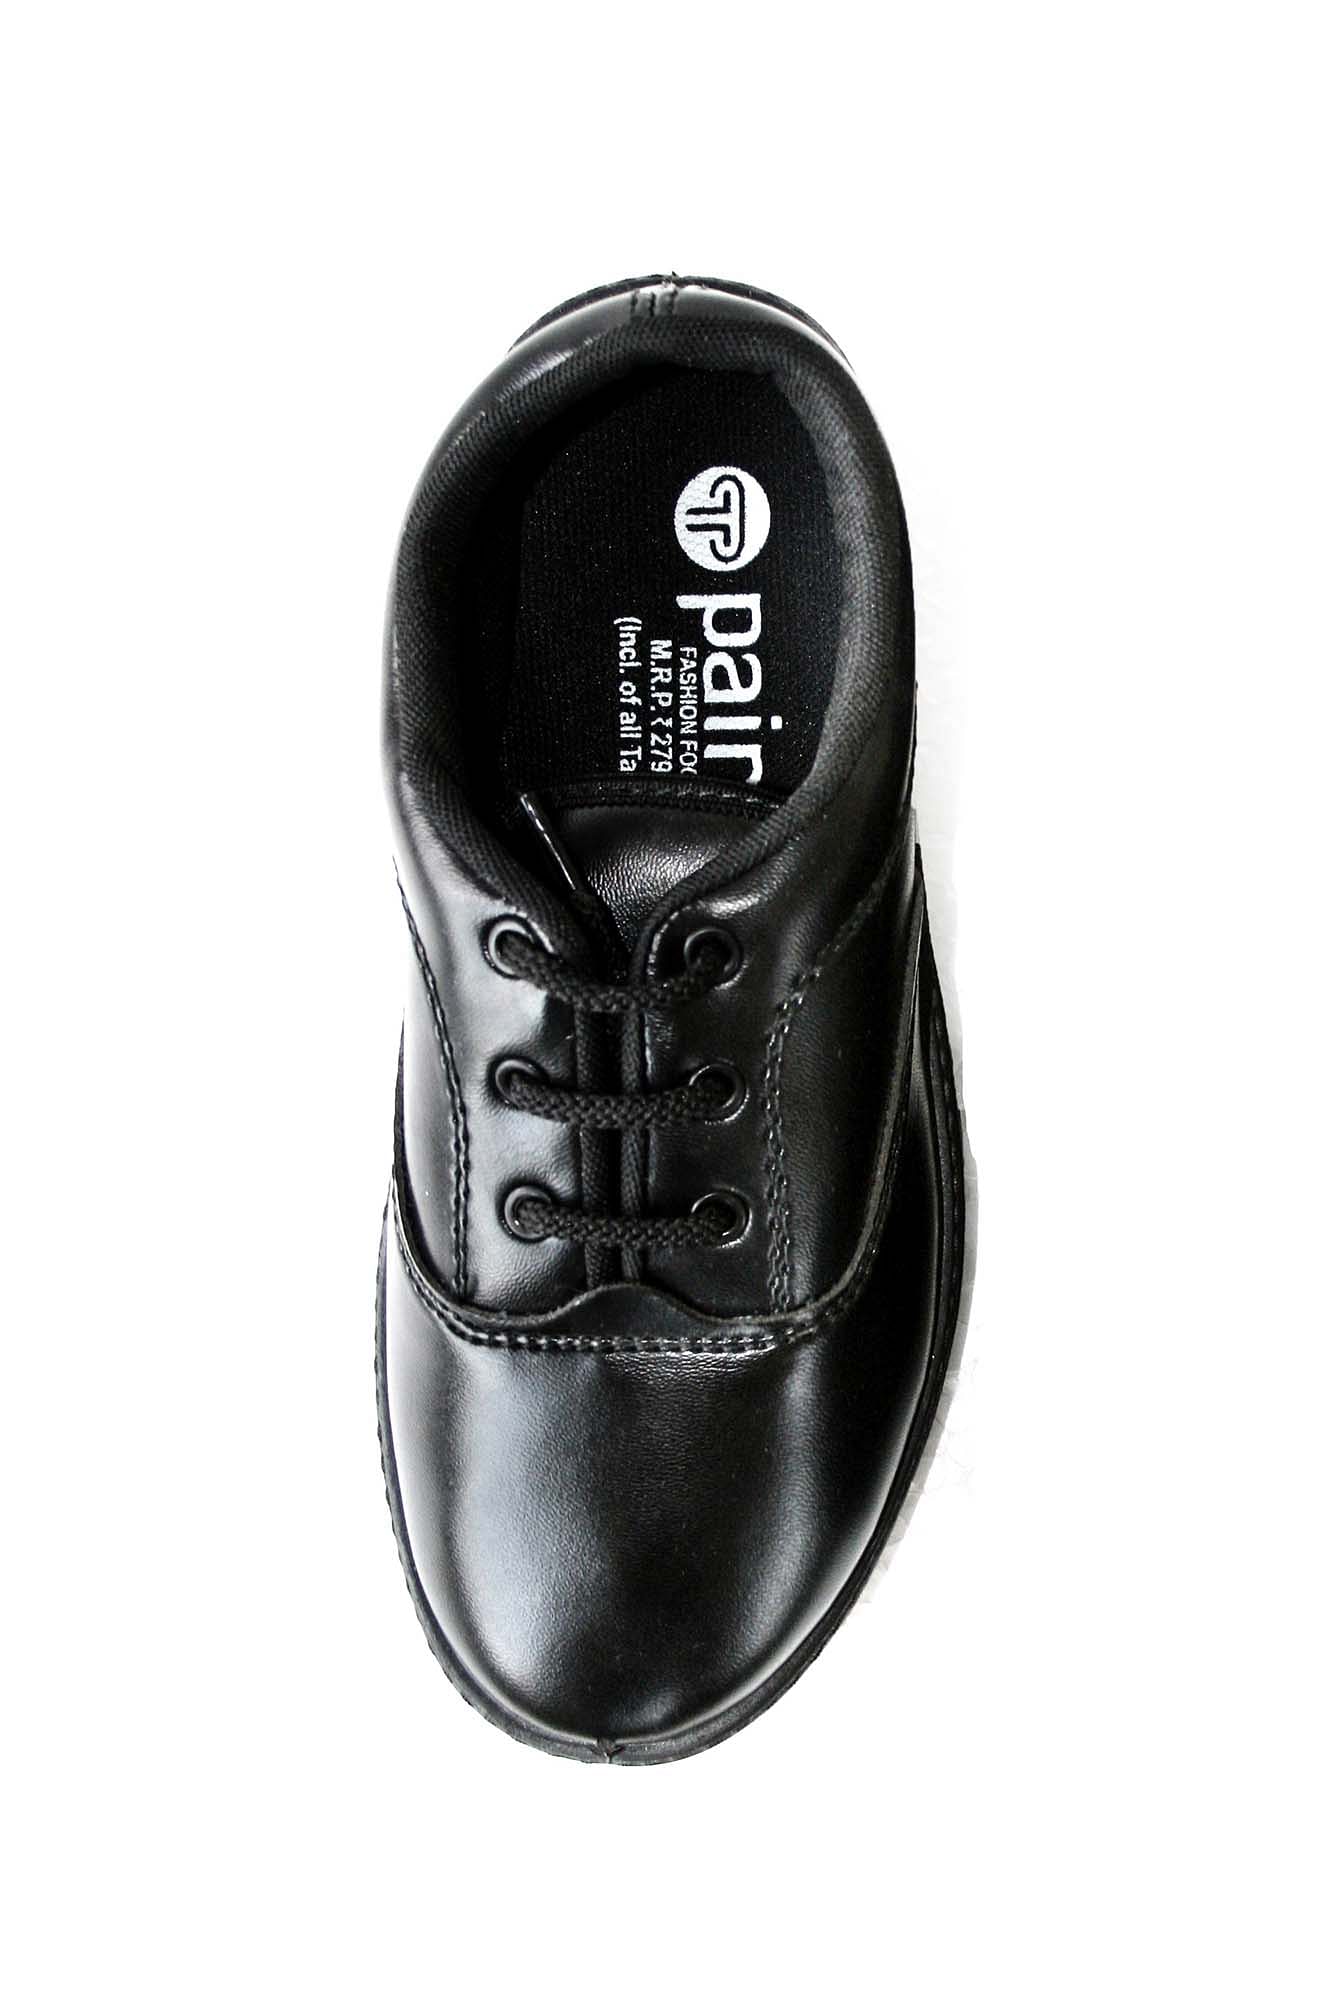 Pair-it Boys PVC School Shoe - Size- 6 - Color Black